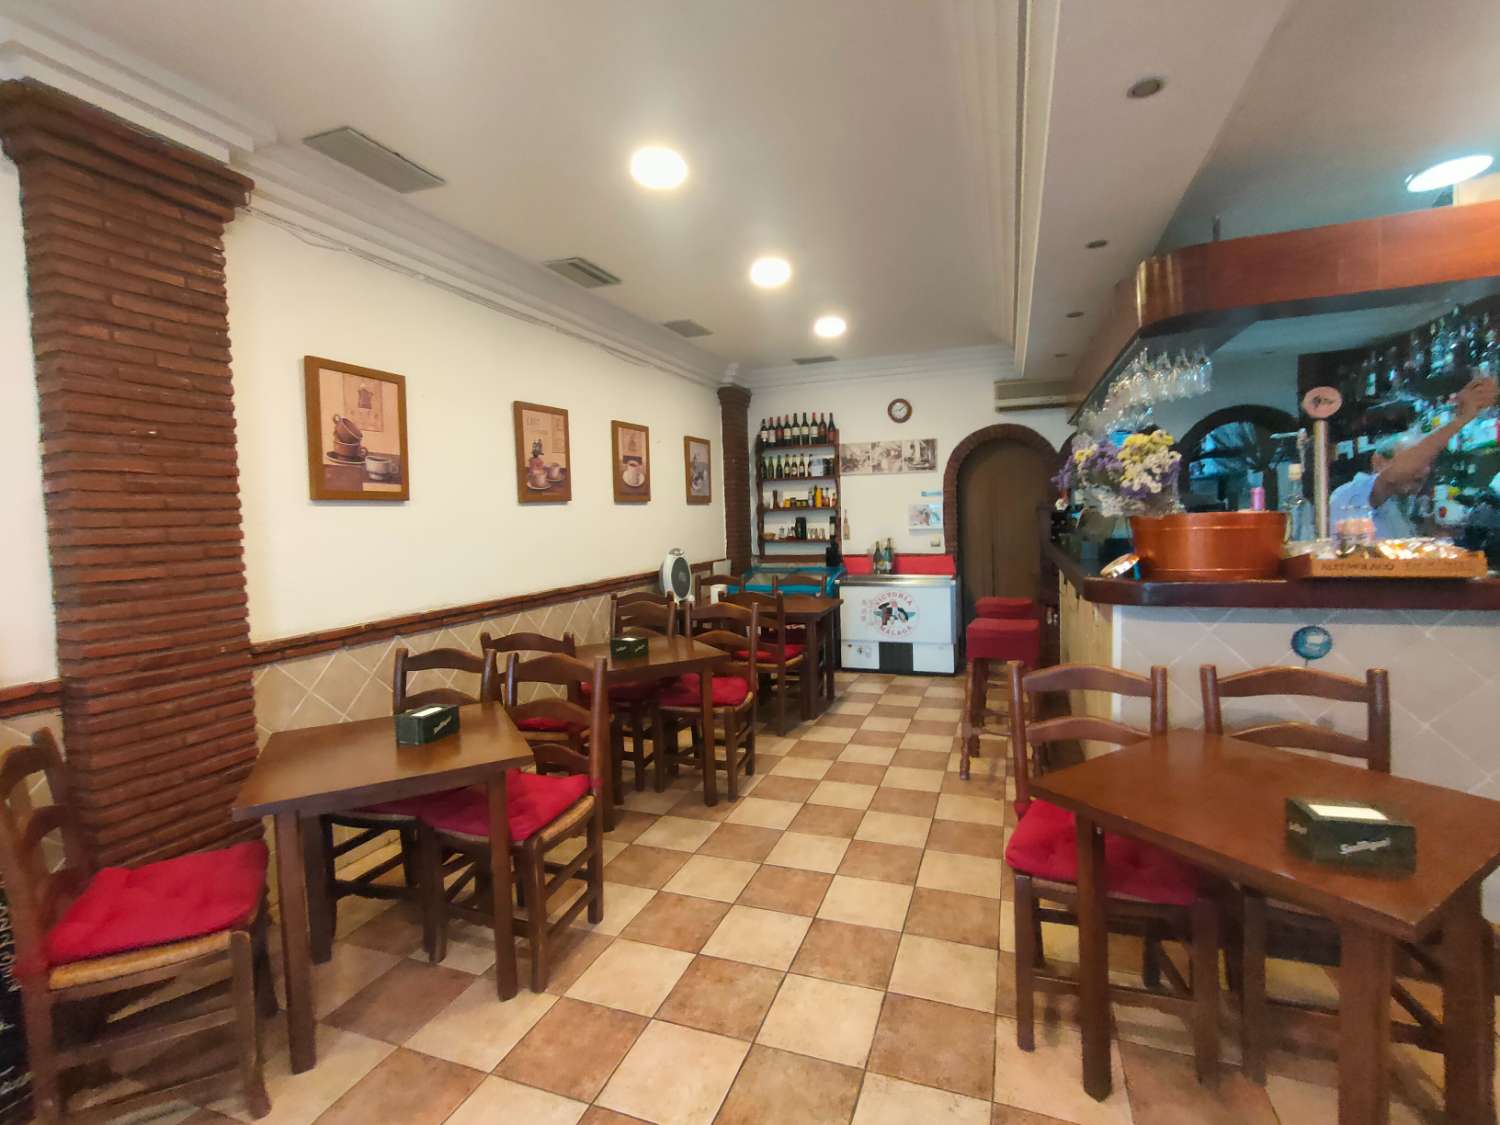 Bistro Cafe Bar Bistro for sale in Arroyo de la Miel, Benalmadena Costa del Sol - AREA PRIME